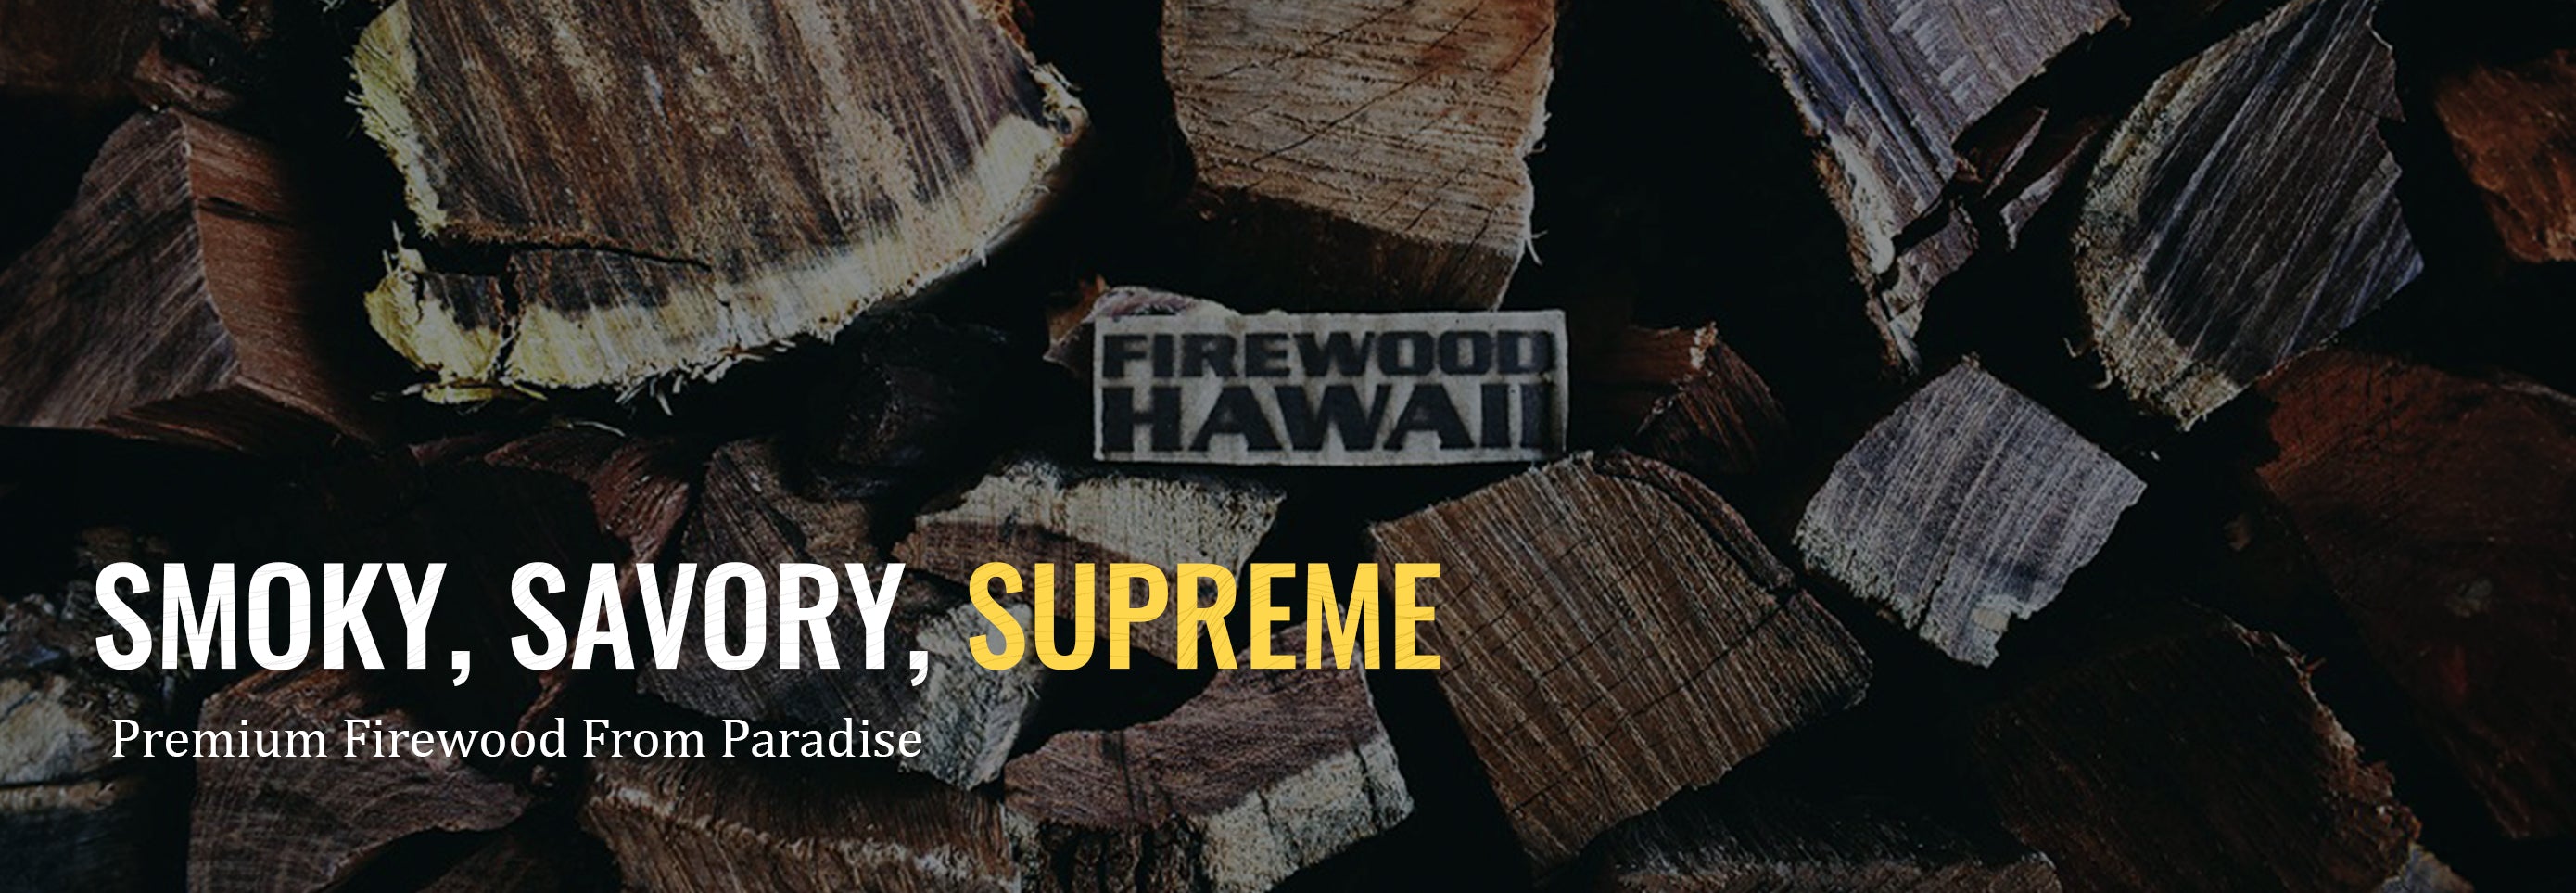 Firewood Hawaii - Kiawe Wood